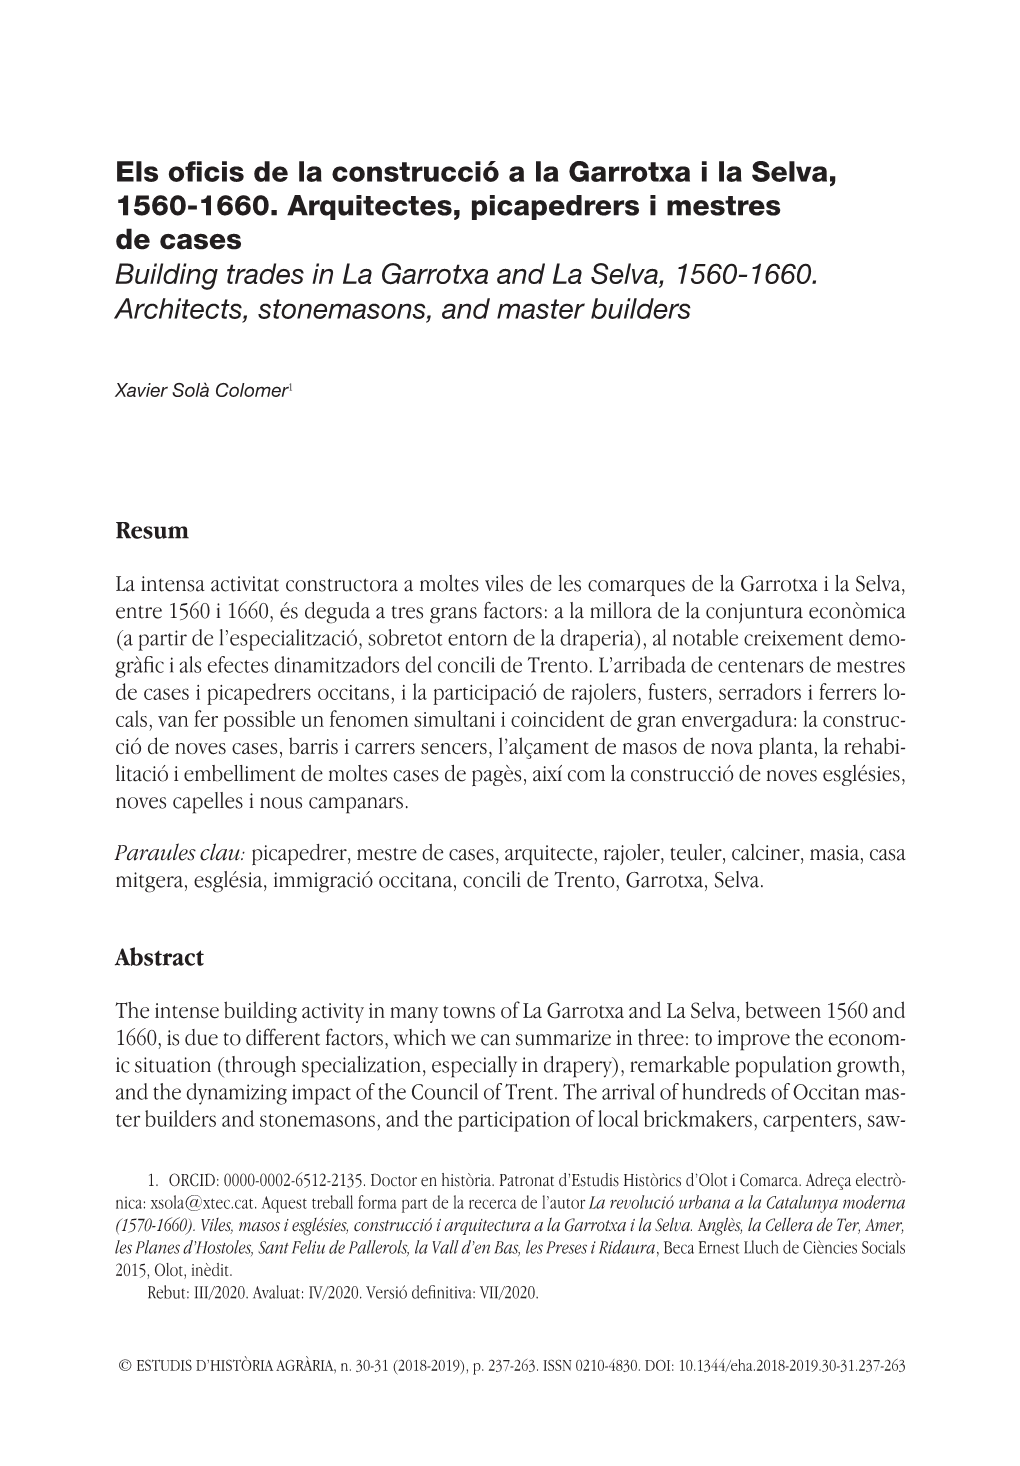 Els Oficis De La Construcció a La Garrotxa I La Selva, 1560-1660